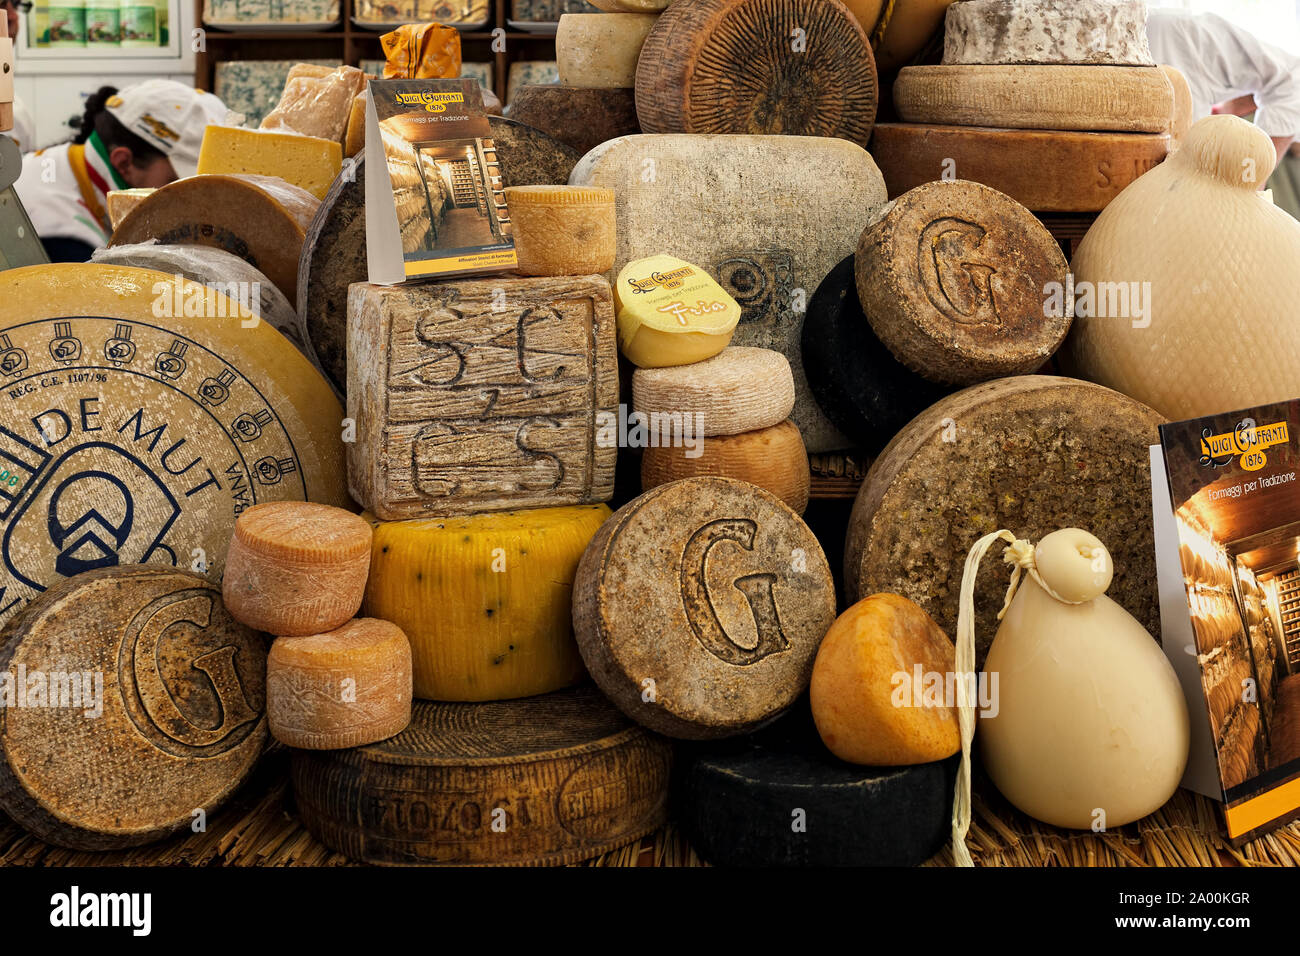 BRA, ITALIE - 18 septembre. 2015 : différents types de fromage fumé artisanal sur le bloquer en cours du marché du fromage International traditionnel de prendre plac Banque D'Images